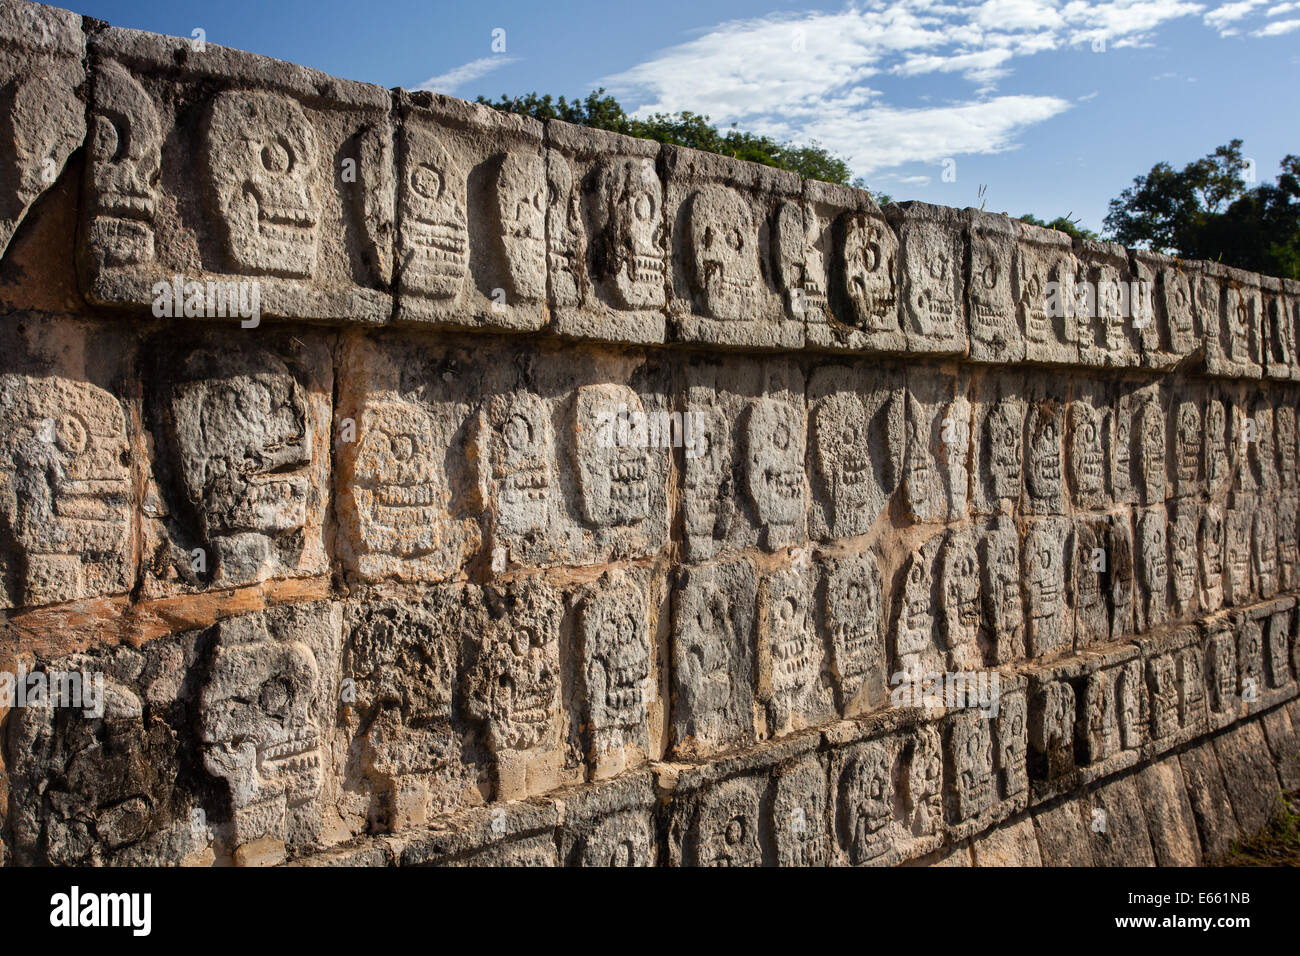 Der Tzompantli oder die Wand der Schädel in Chichen-Itza Yucatan, Mexiko. Stockfoto